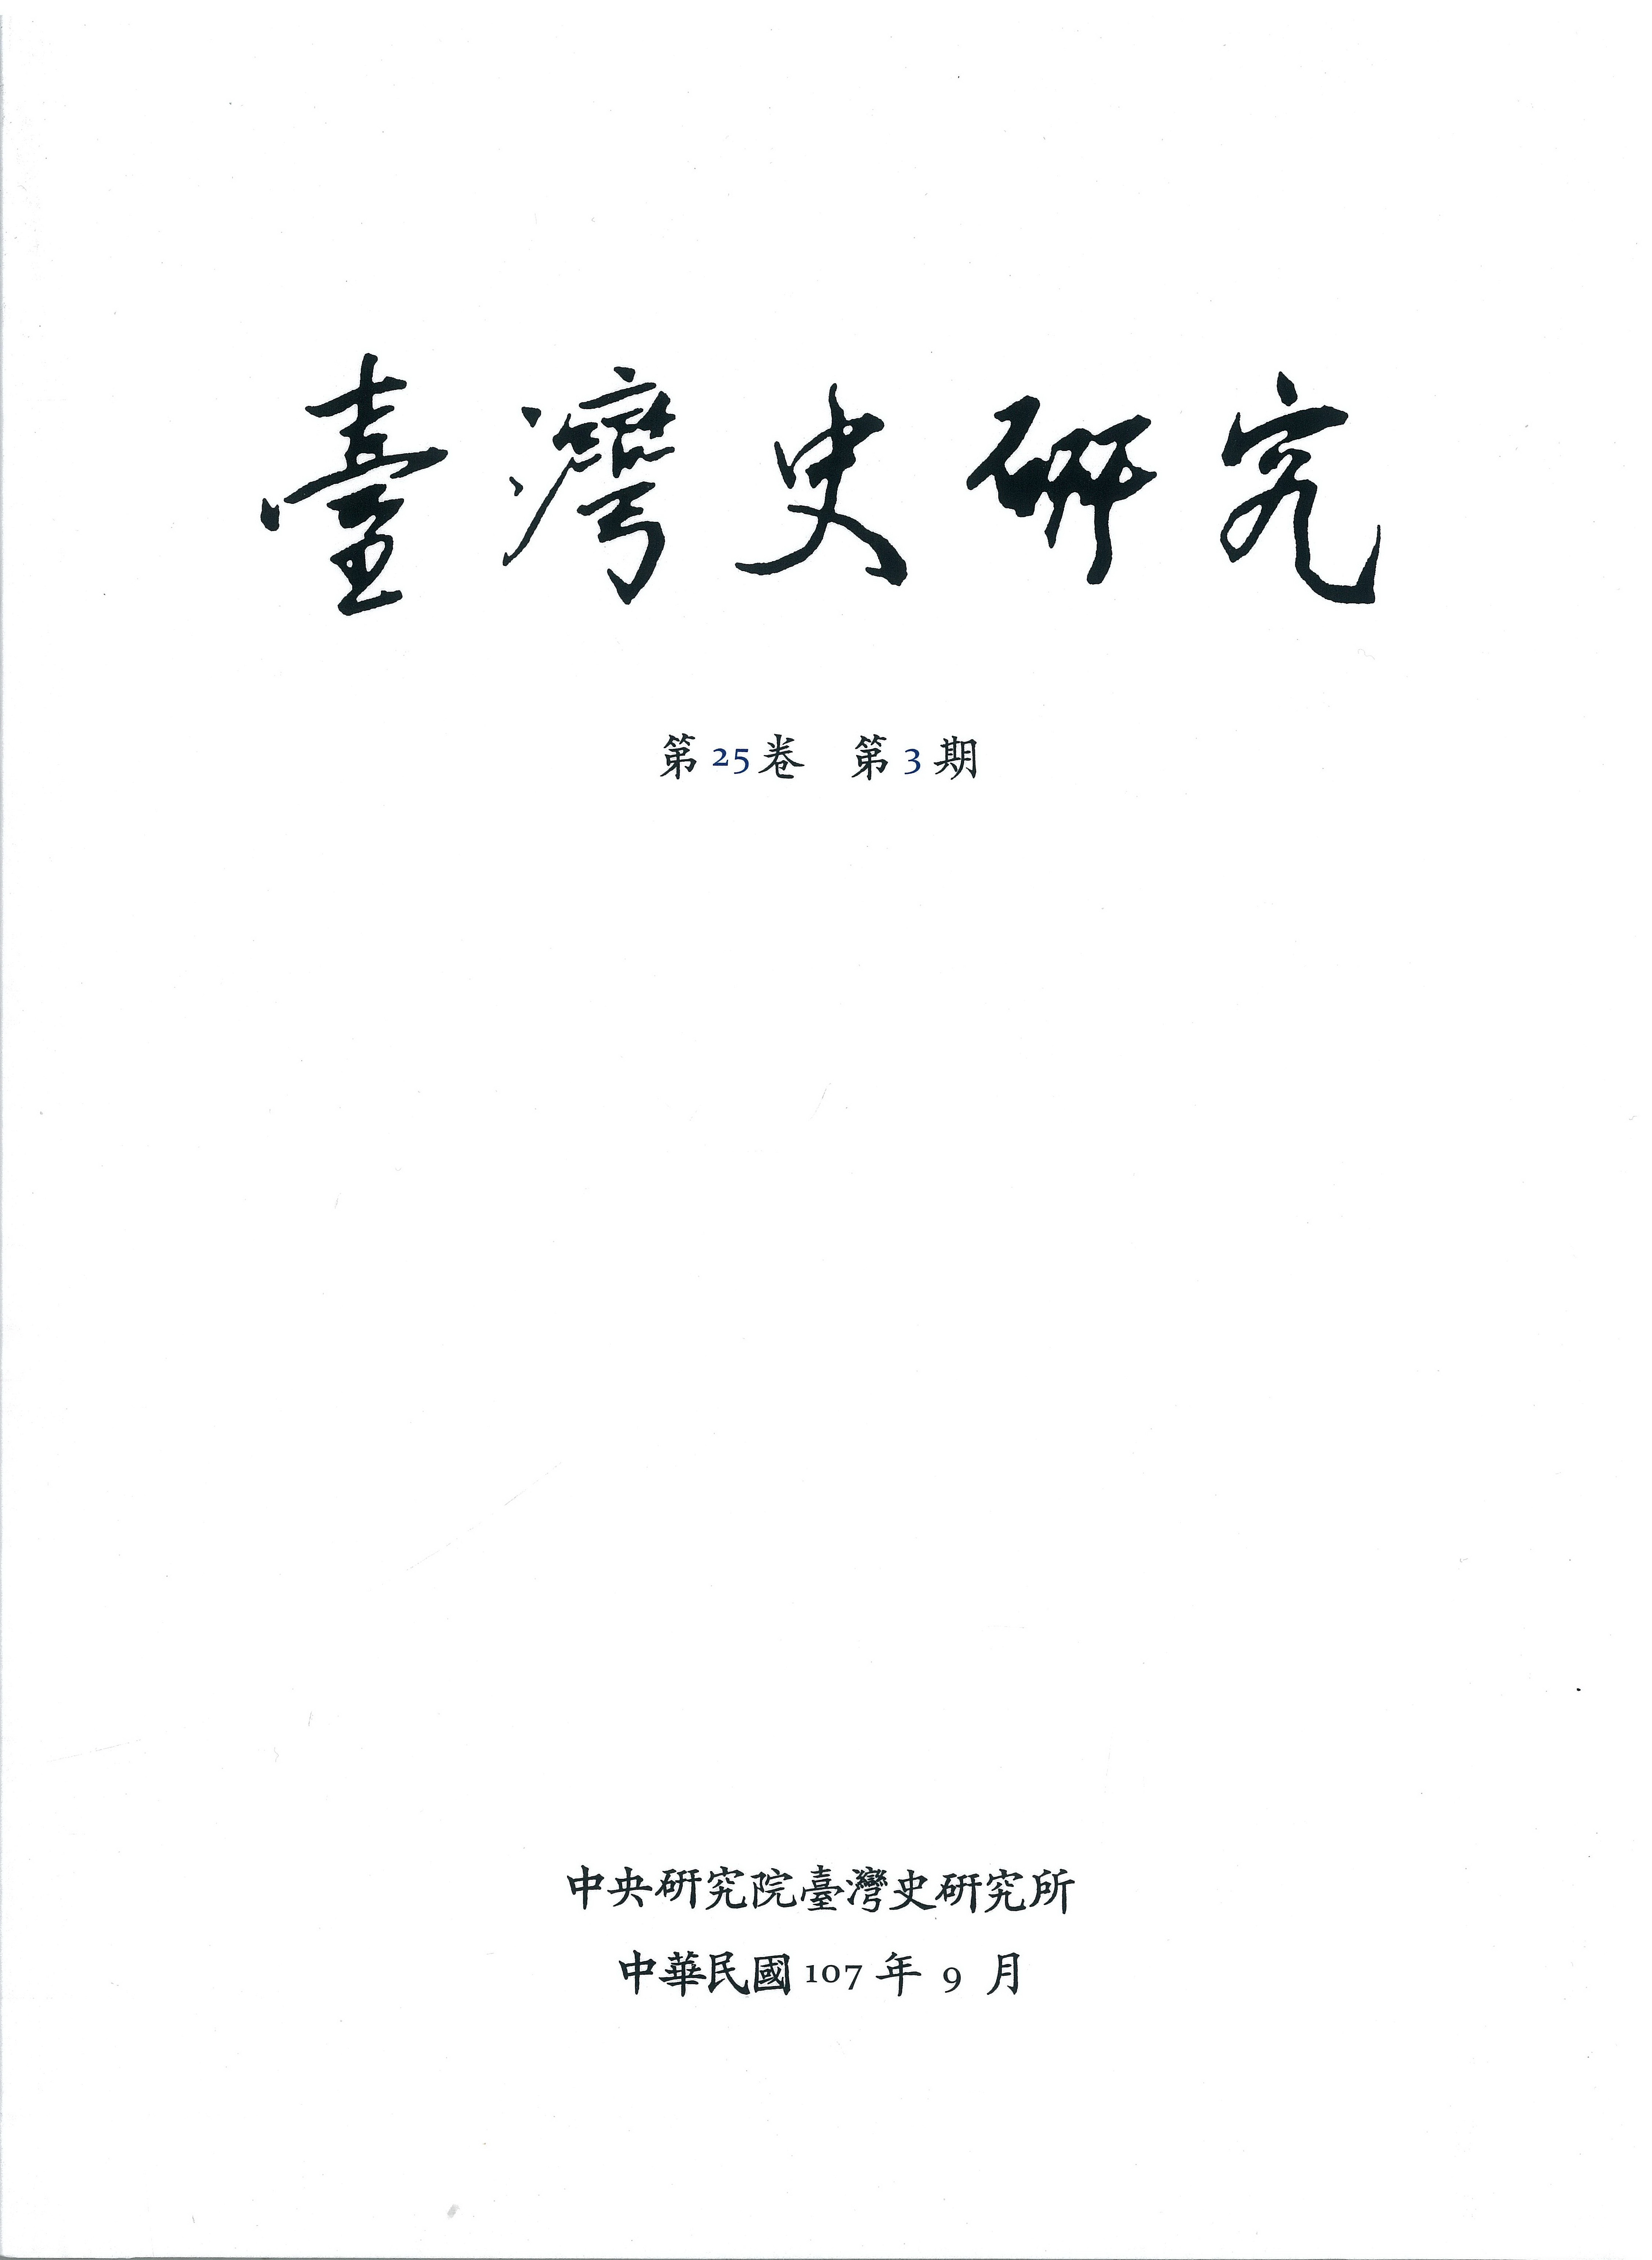 《臺灣史研究》季刊第25卷第3期出版